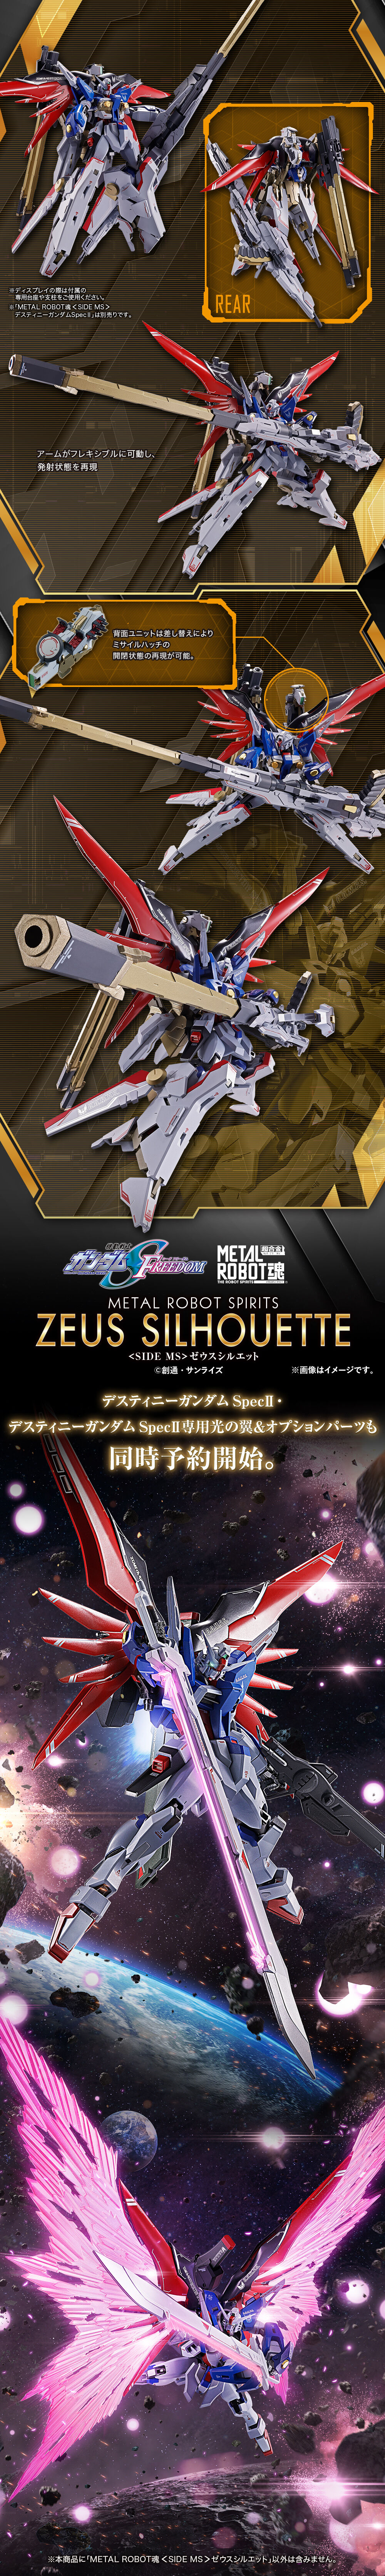 Metal Robot Spirits(Side MS) A-GXQ754/V2 Zeus Silhouette for ZGMF/A-42S2 Destiny Gundam Spec Ⅱ